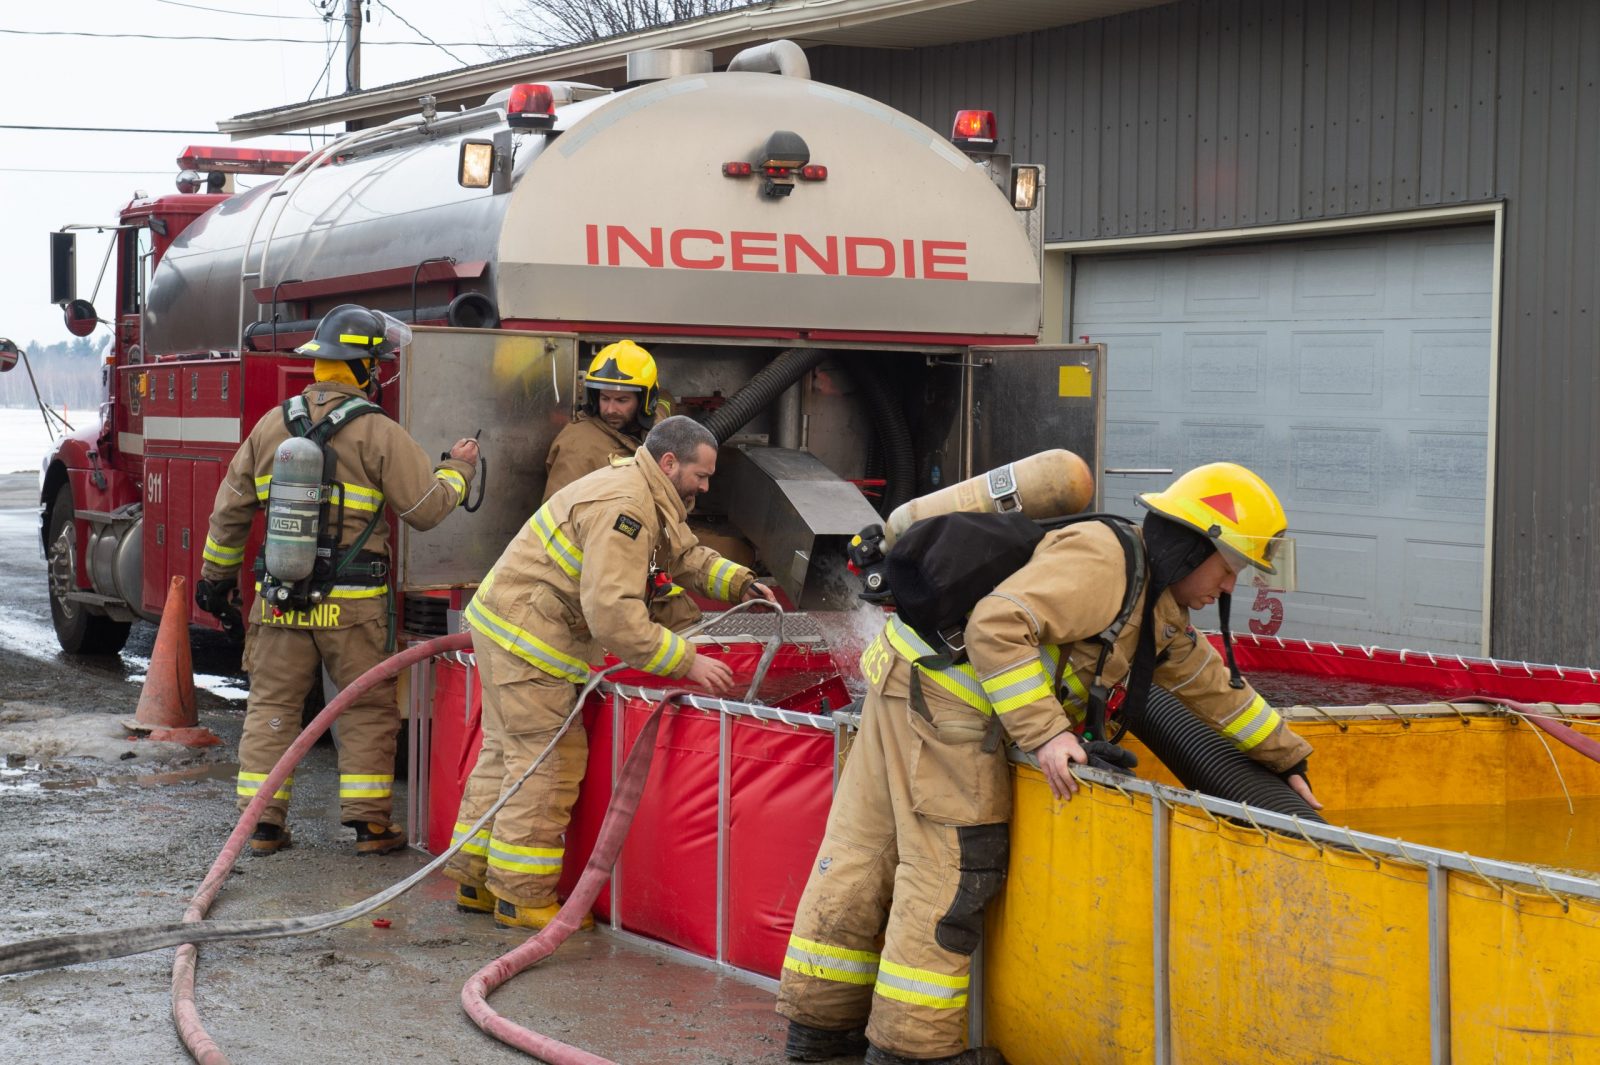 Service incendie : une possible alliance entre L’Avenir et Drummondville soulève des préoccupations